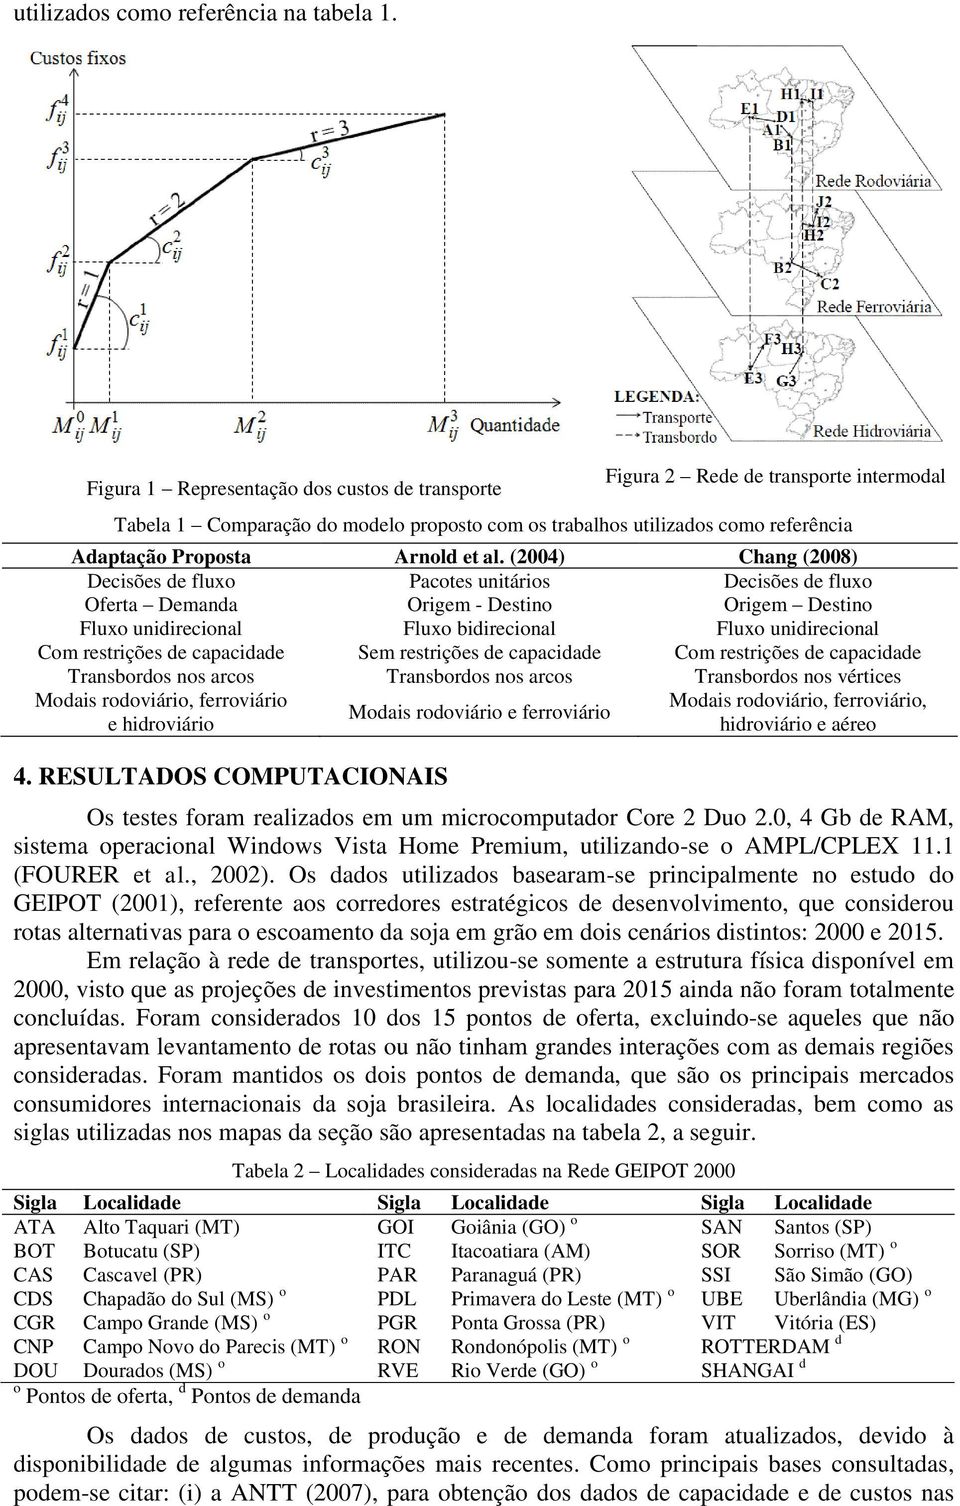 (004) Chang (008) Decisões de fluxo Pacotes unitáios Decisões de fluxo Ofeta Demanda Oigem - Destino Oigem Destino Fluxo unidiecional Fluxo bidiecional Fluxo unidiecional Com estições de capacidade